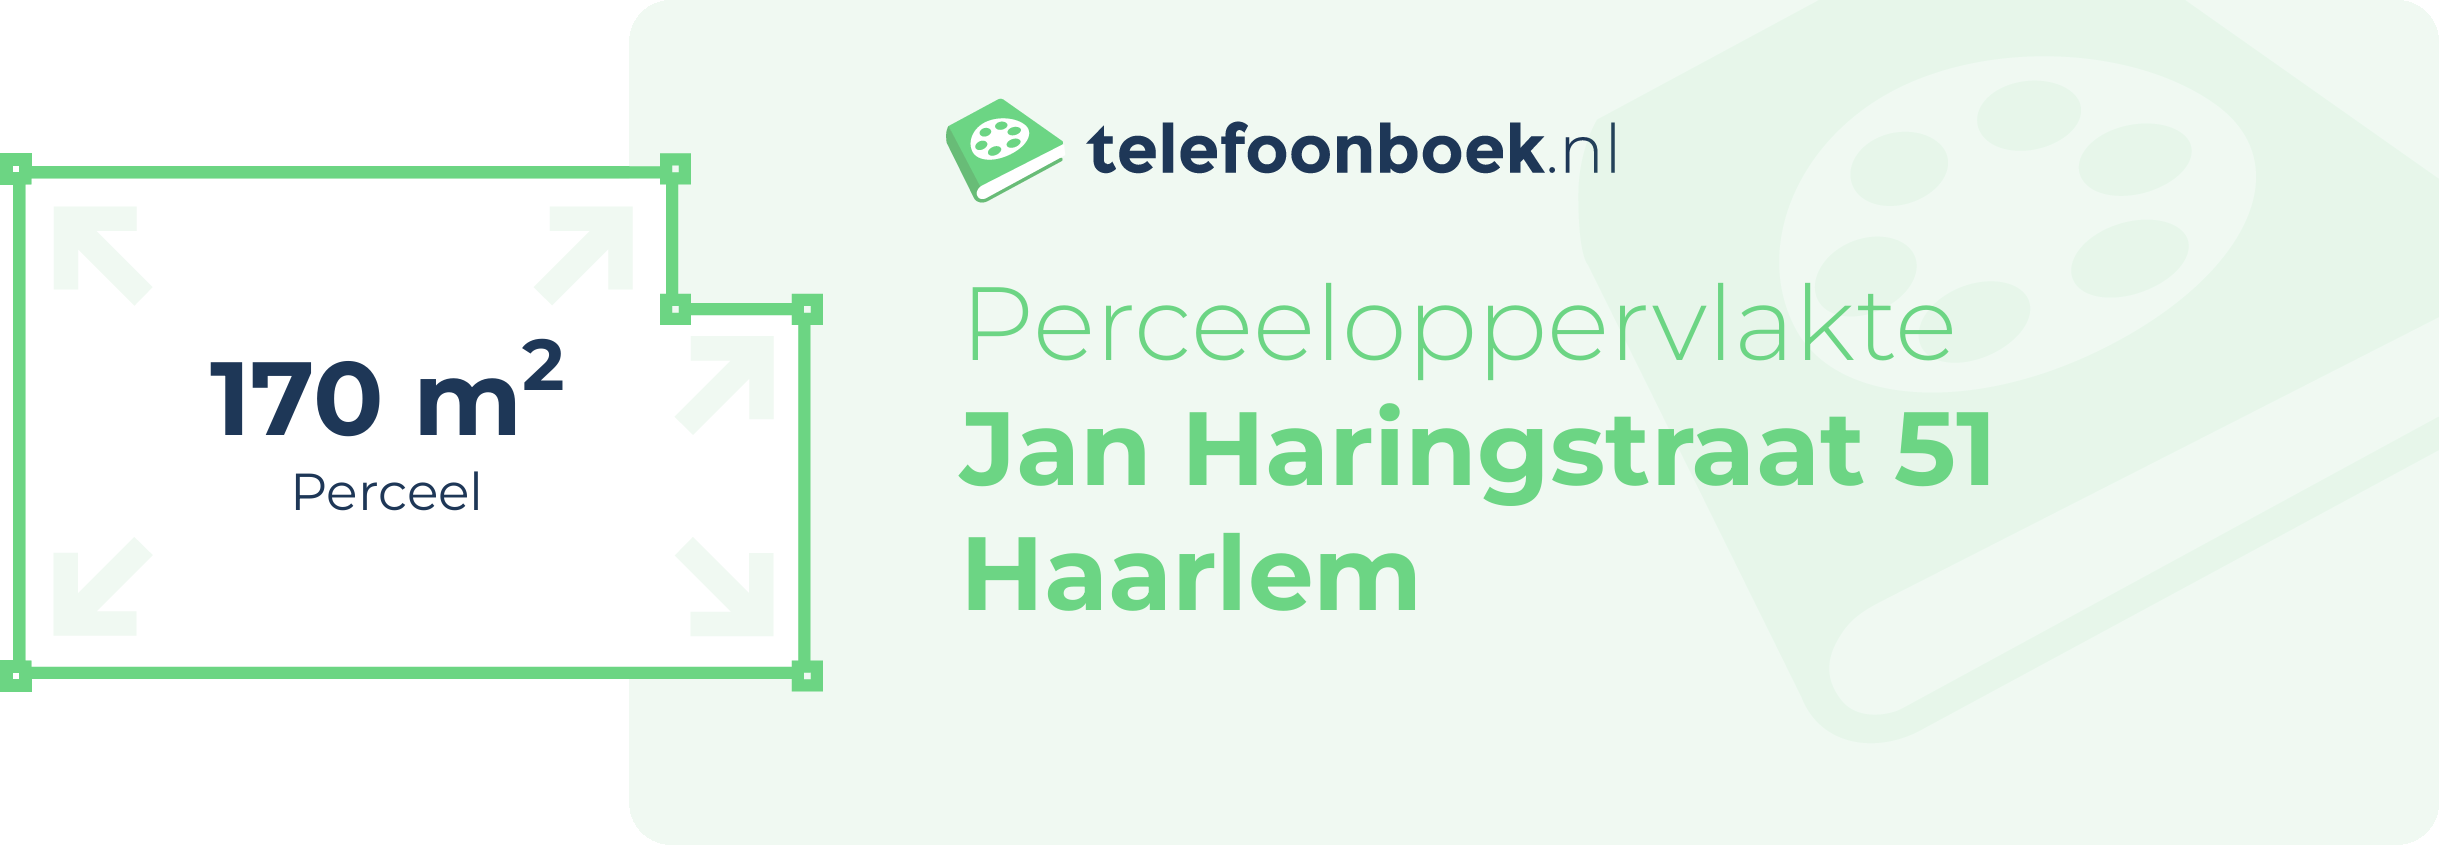 Perceeloppervlakte Jan Haringstraat 51 Haarlem